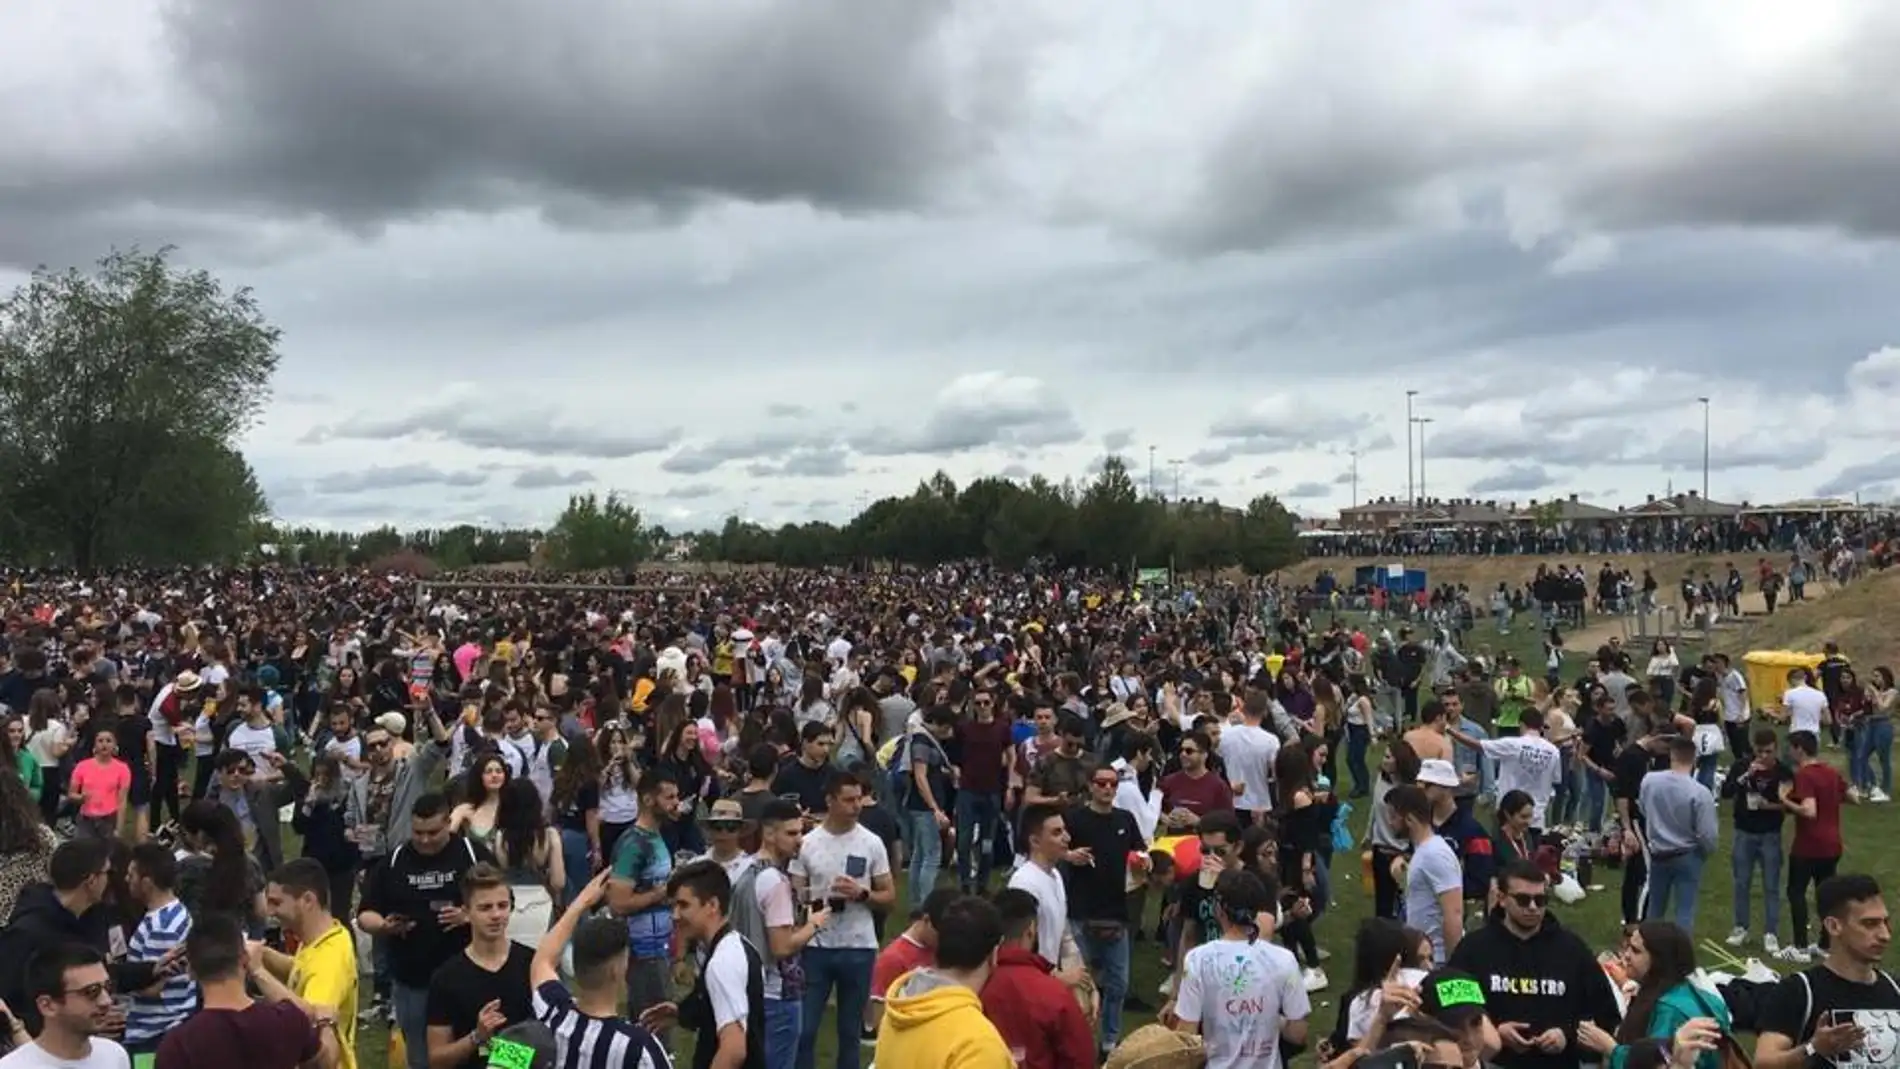 La fiesta de la ITA rebaja su aforo a los 10.000 asistentes